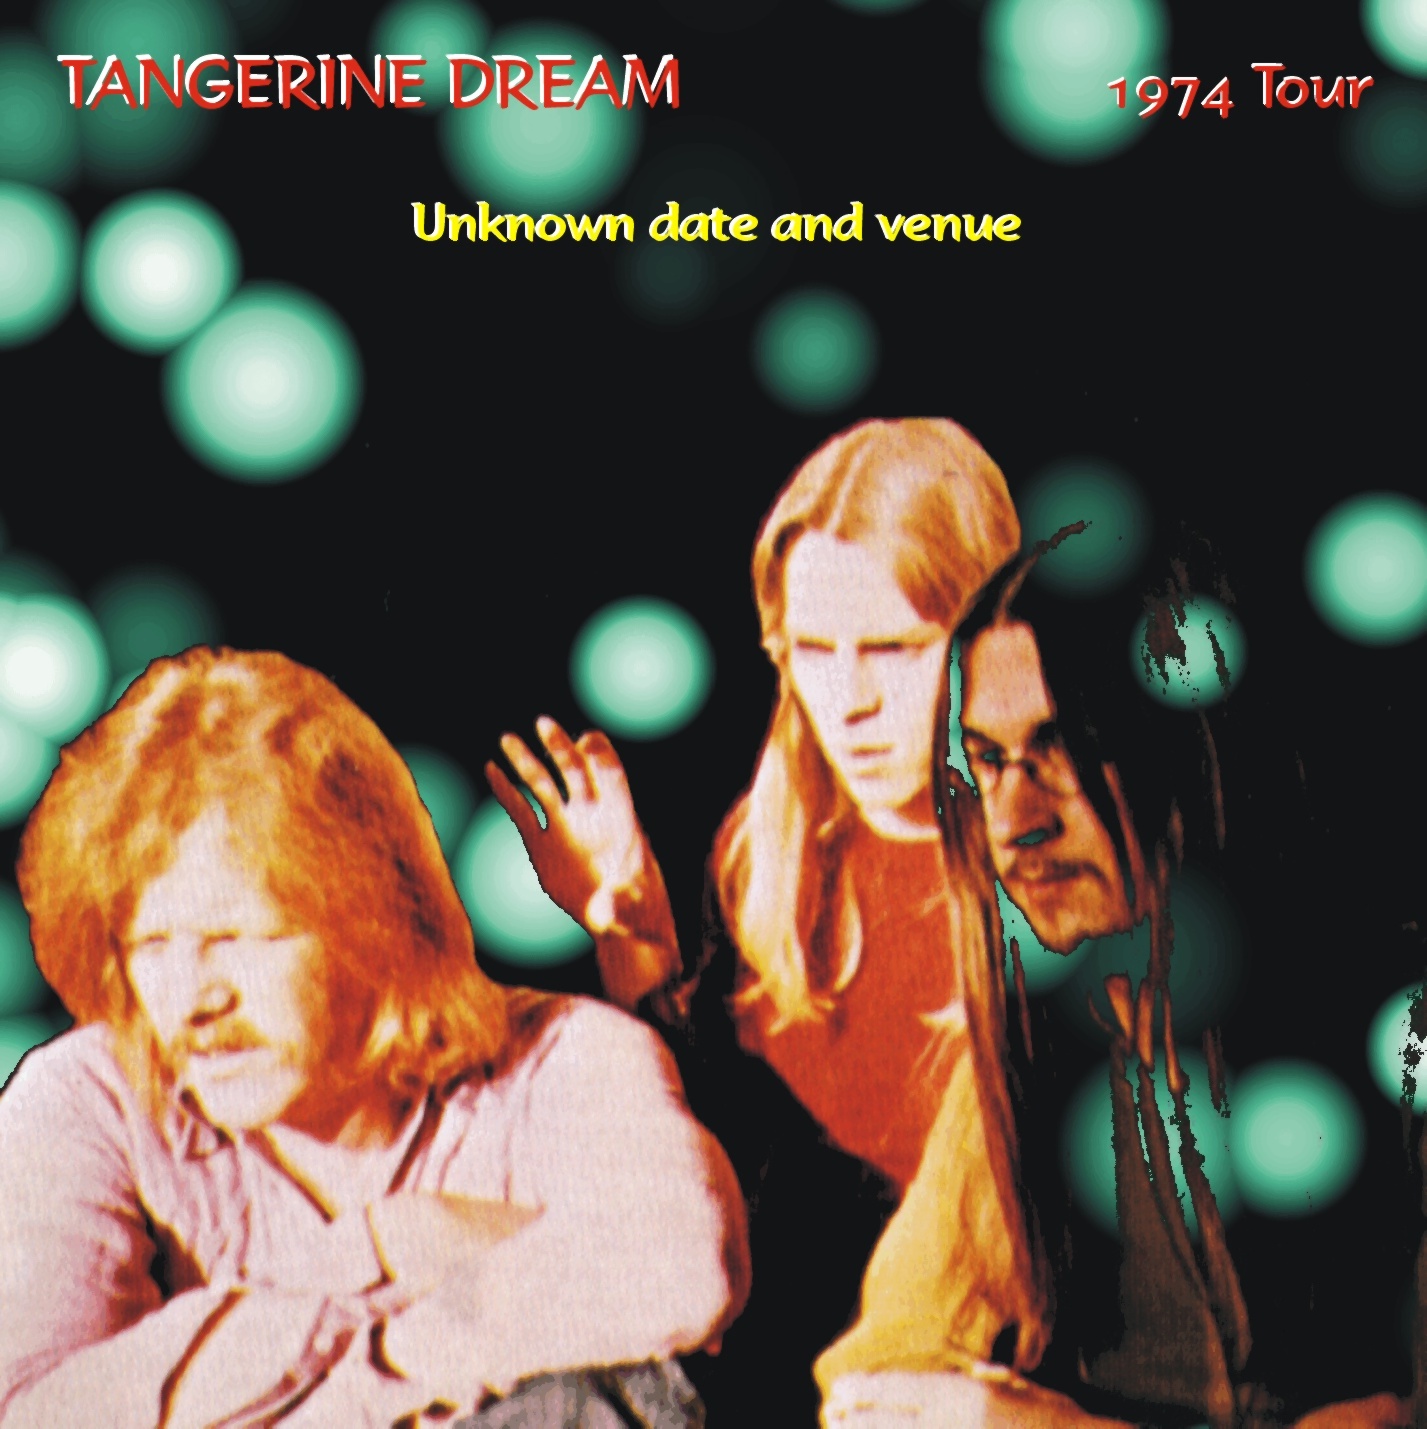 TangerineDream1974-1976VariousOddsAndEnds (1).jpg